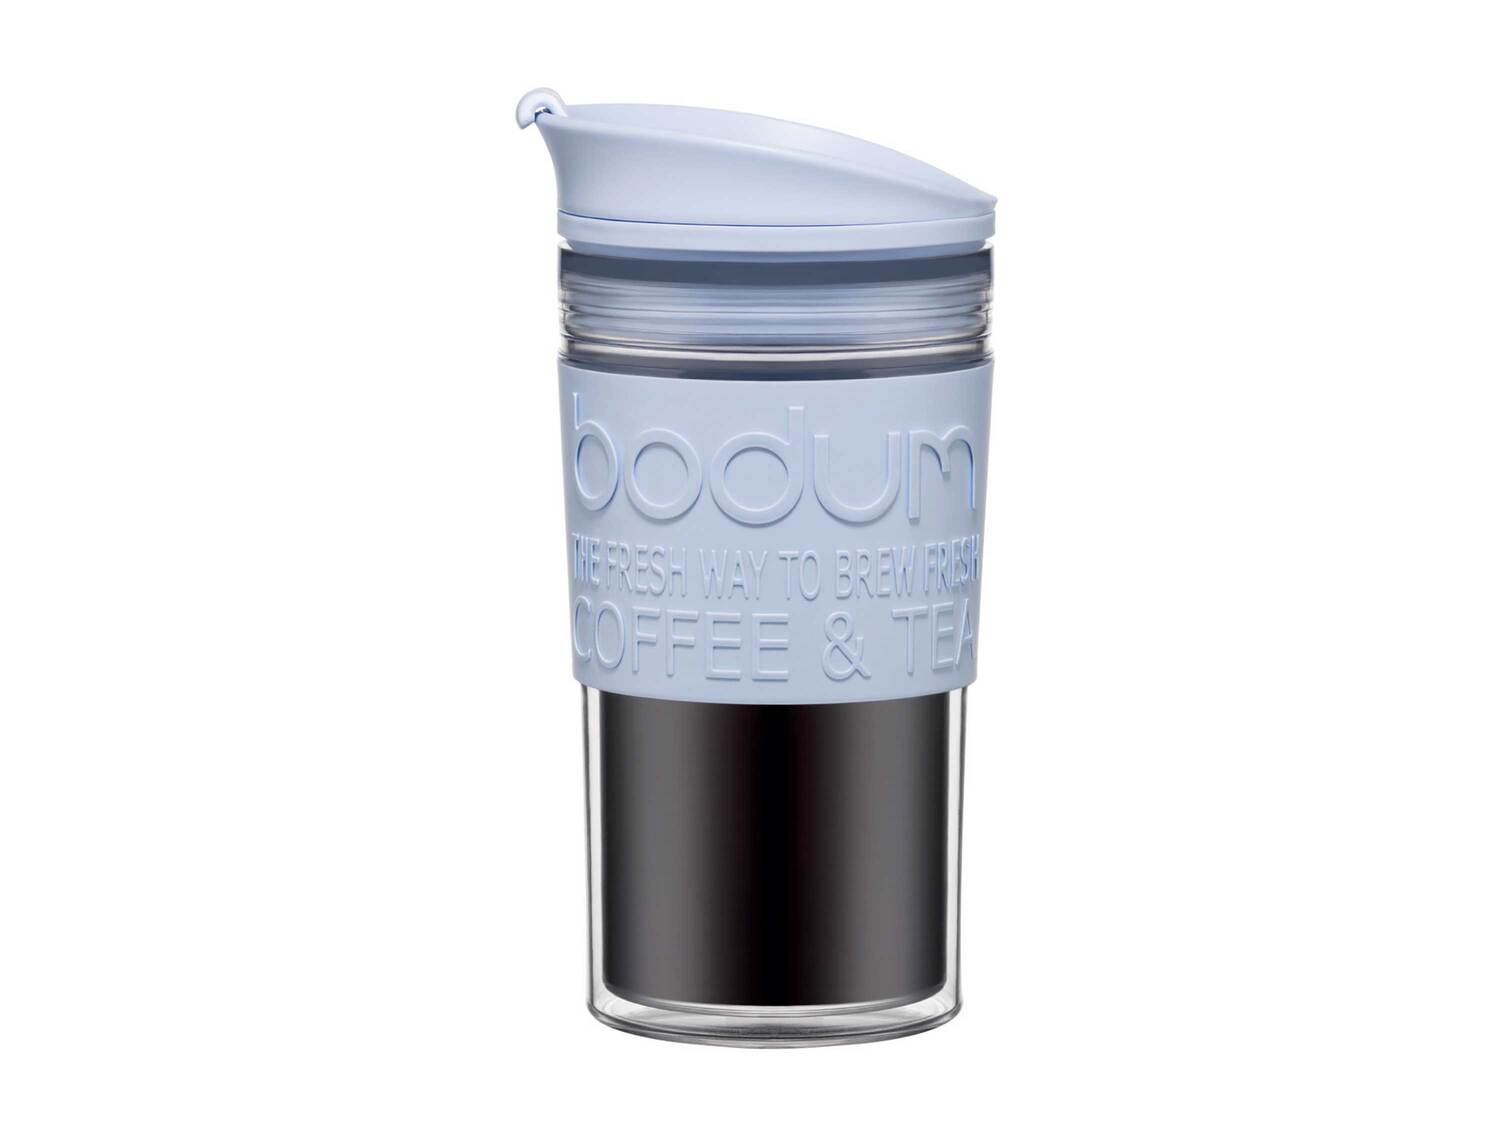 Mug de voyage Bodum, le prix 9.99 €  
-  Env. 0,35 L
-  Compatible lave-vaisselle